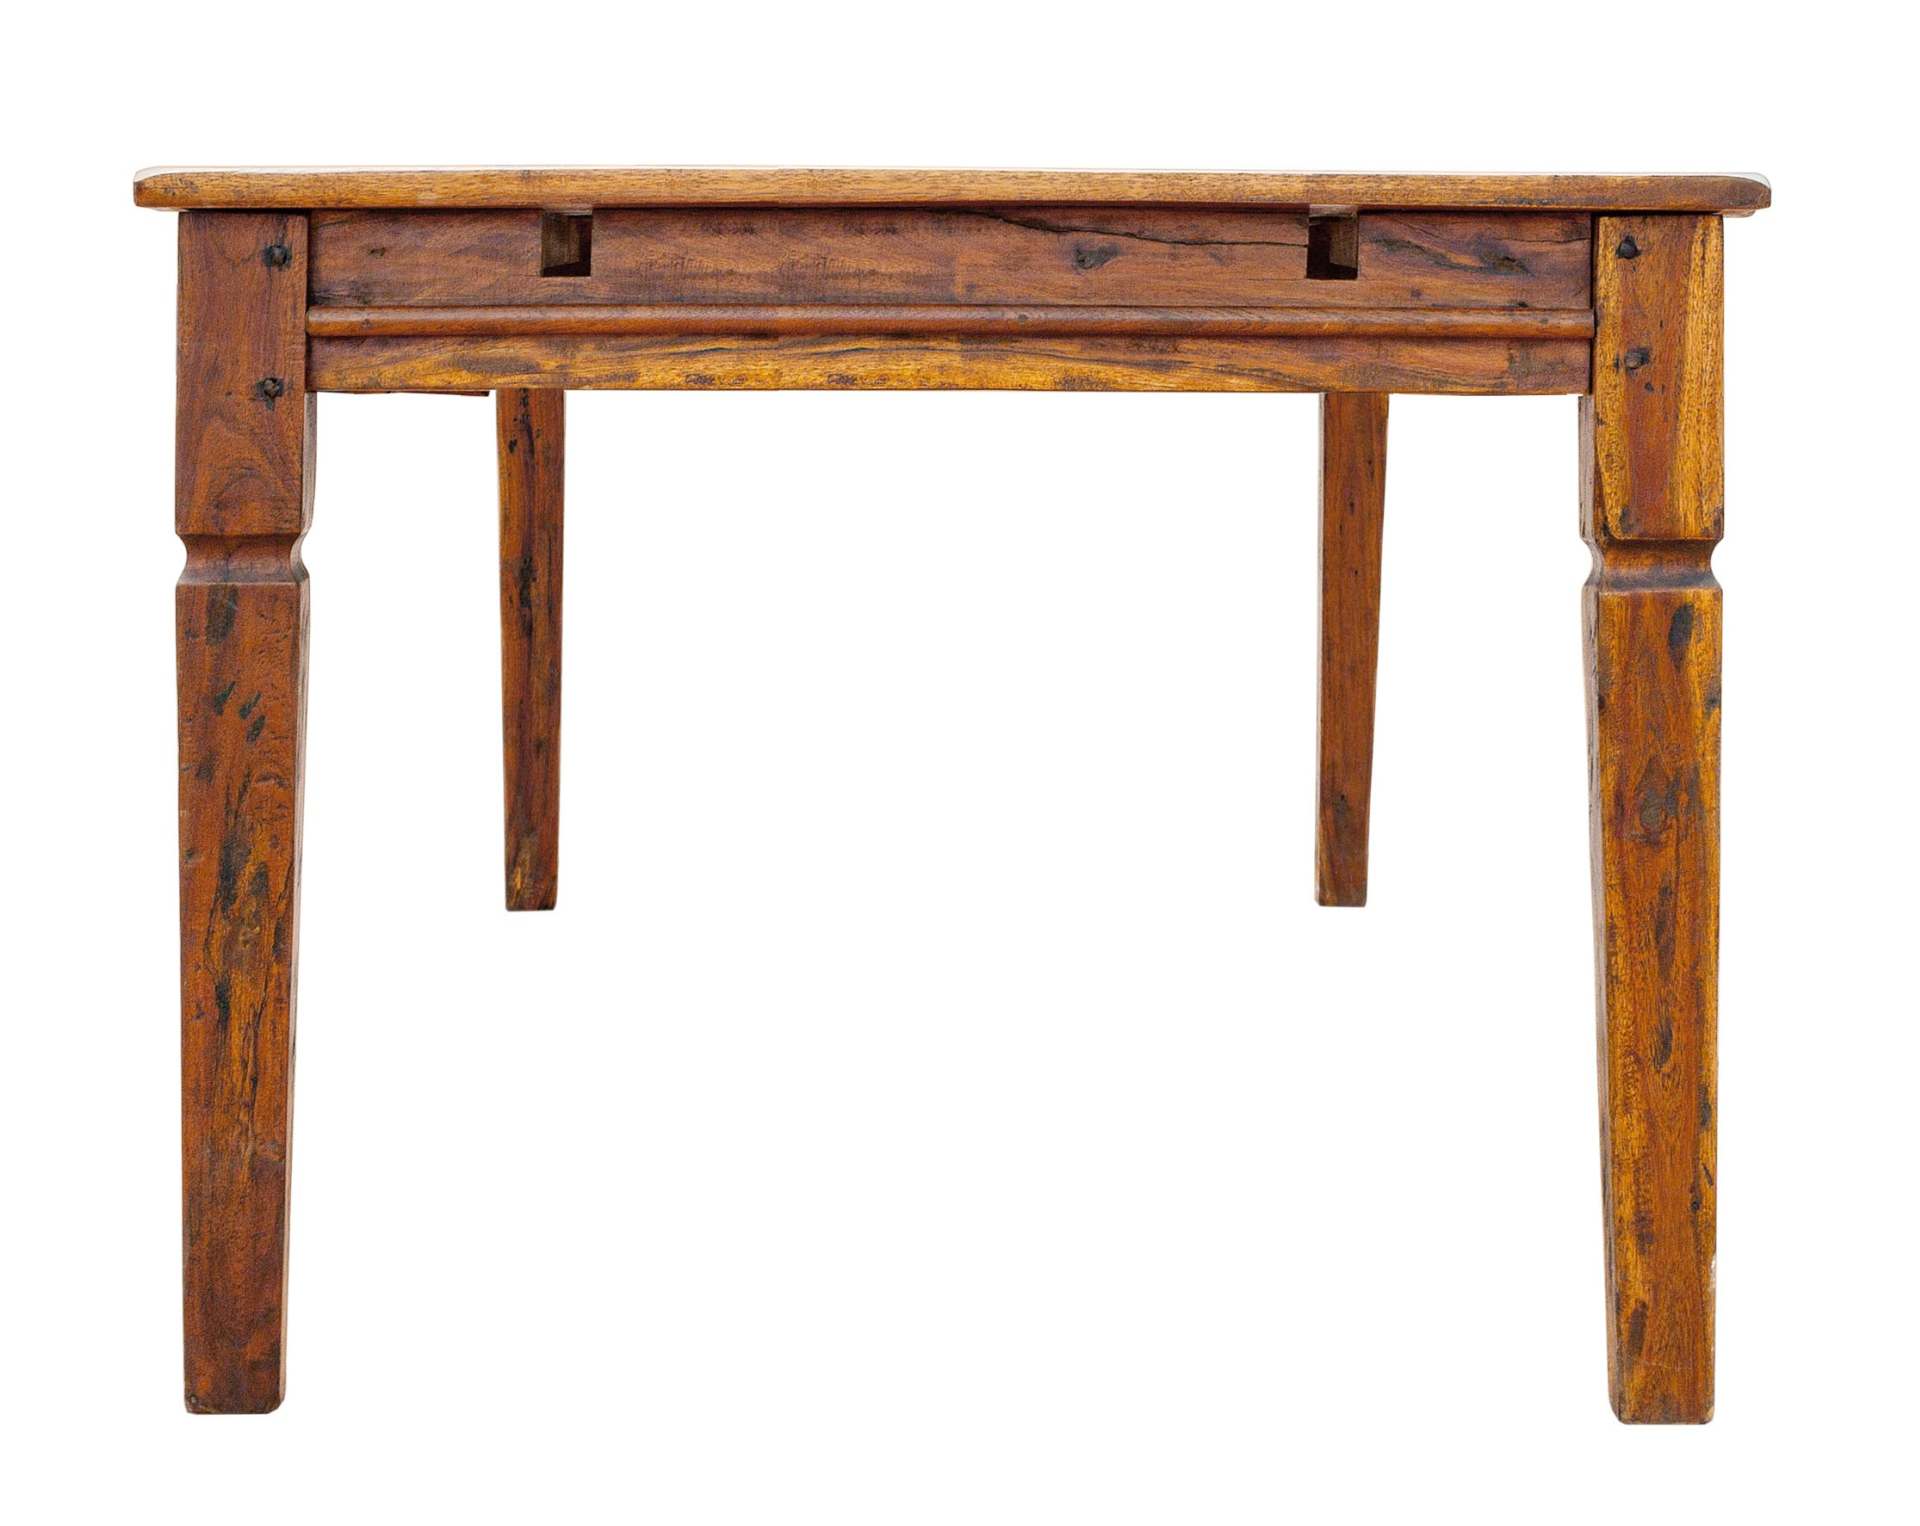 Der Esstisch Chateaux überzeugt mit seinem klassischem Design. Gefertigt wurde er aus Akazienholz, welches einen natürlichen Farbton besitzt. Das Gestell des Tisches ist auch aus Akazienholz. Der Tisch ist ausziehbar von einer Breite von 200 cm auf 290 cm